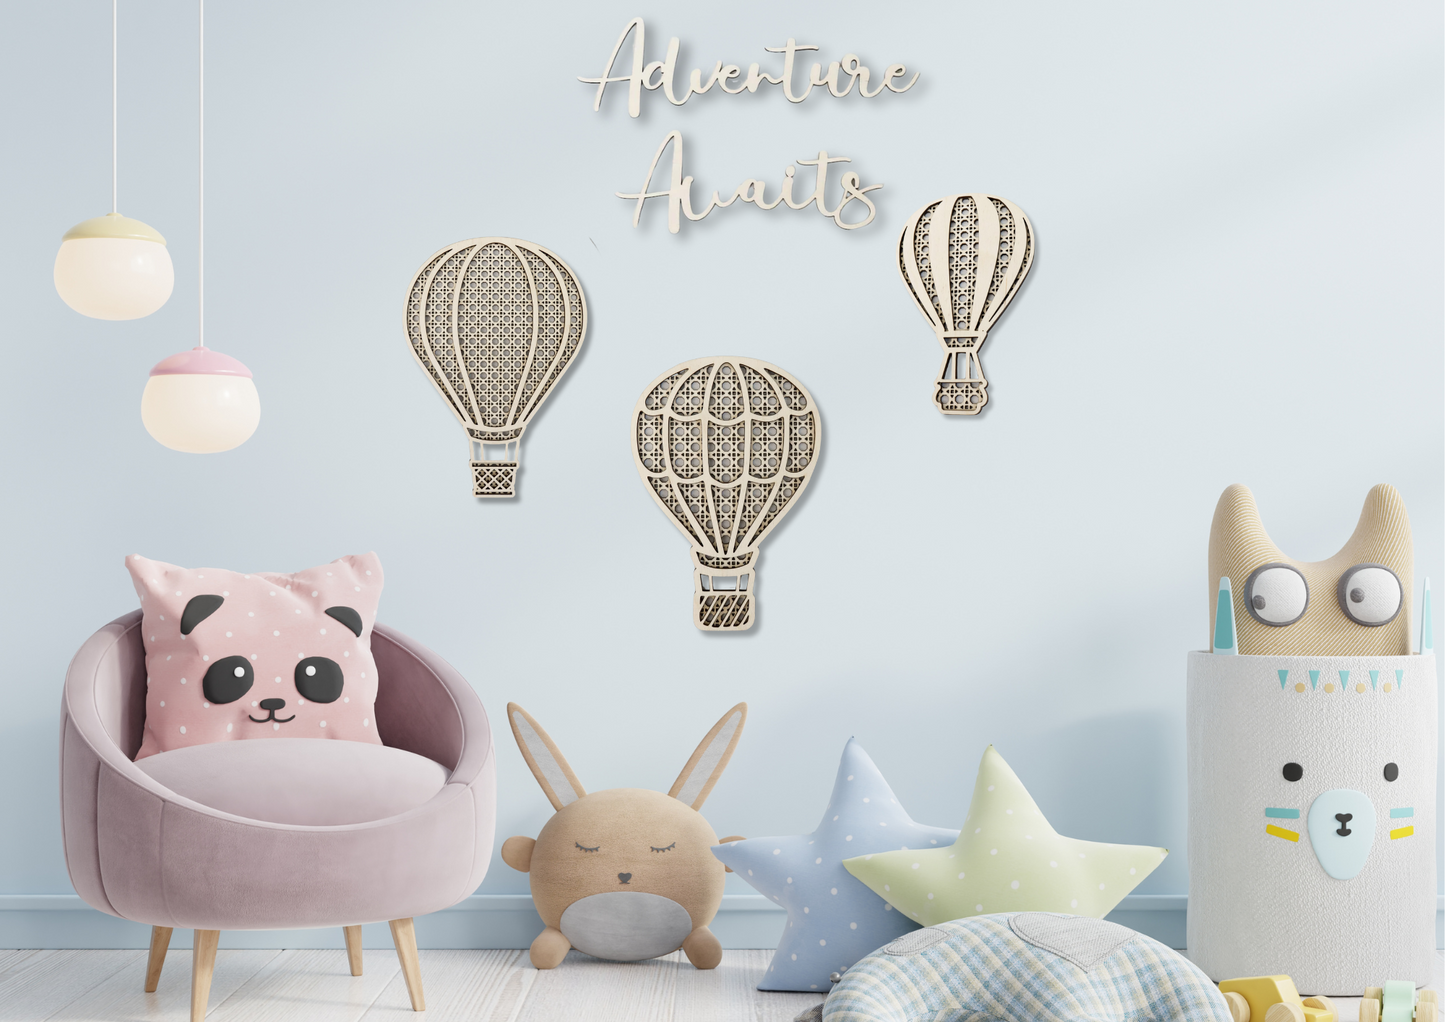 Heißluftballons Adventure Awaits/Schriftzug für die Wand/Kinderzimmerdeko/Schriftzug Kinderzimmer/Geschenk zur Geburt